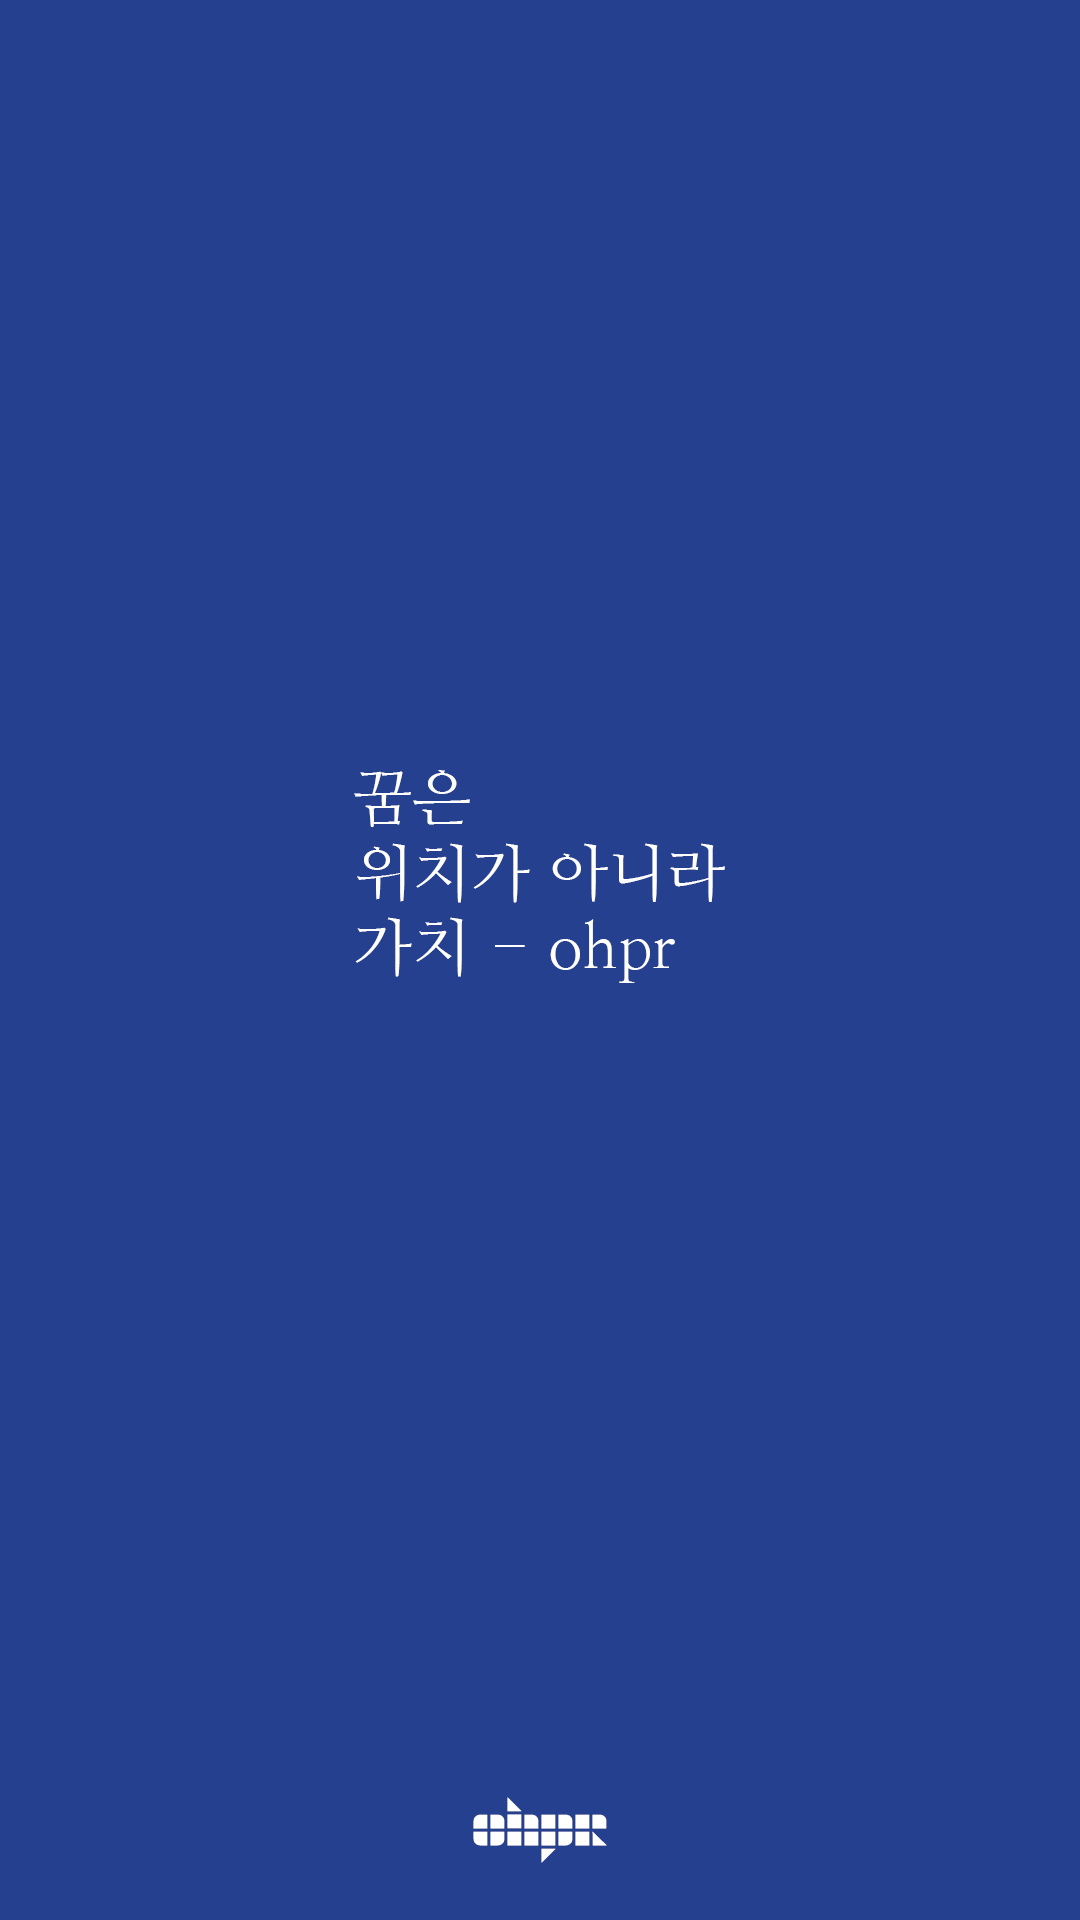 ohpr_wording30